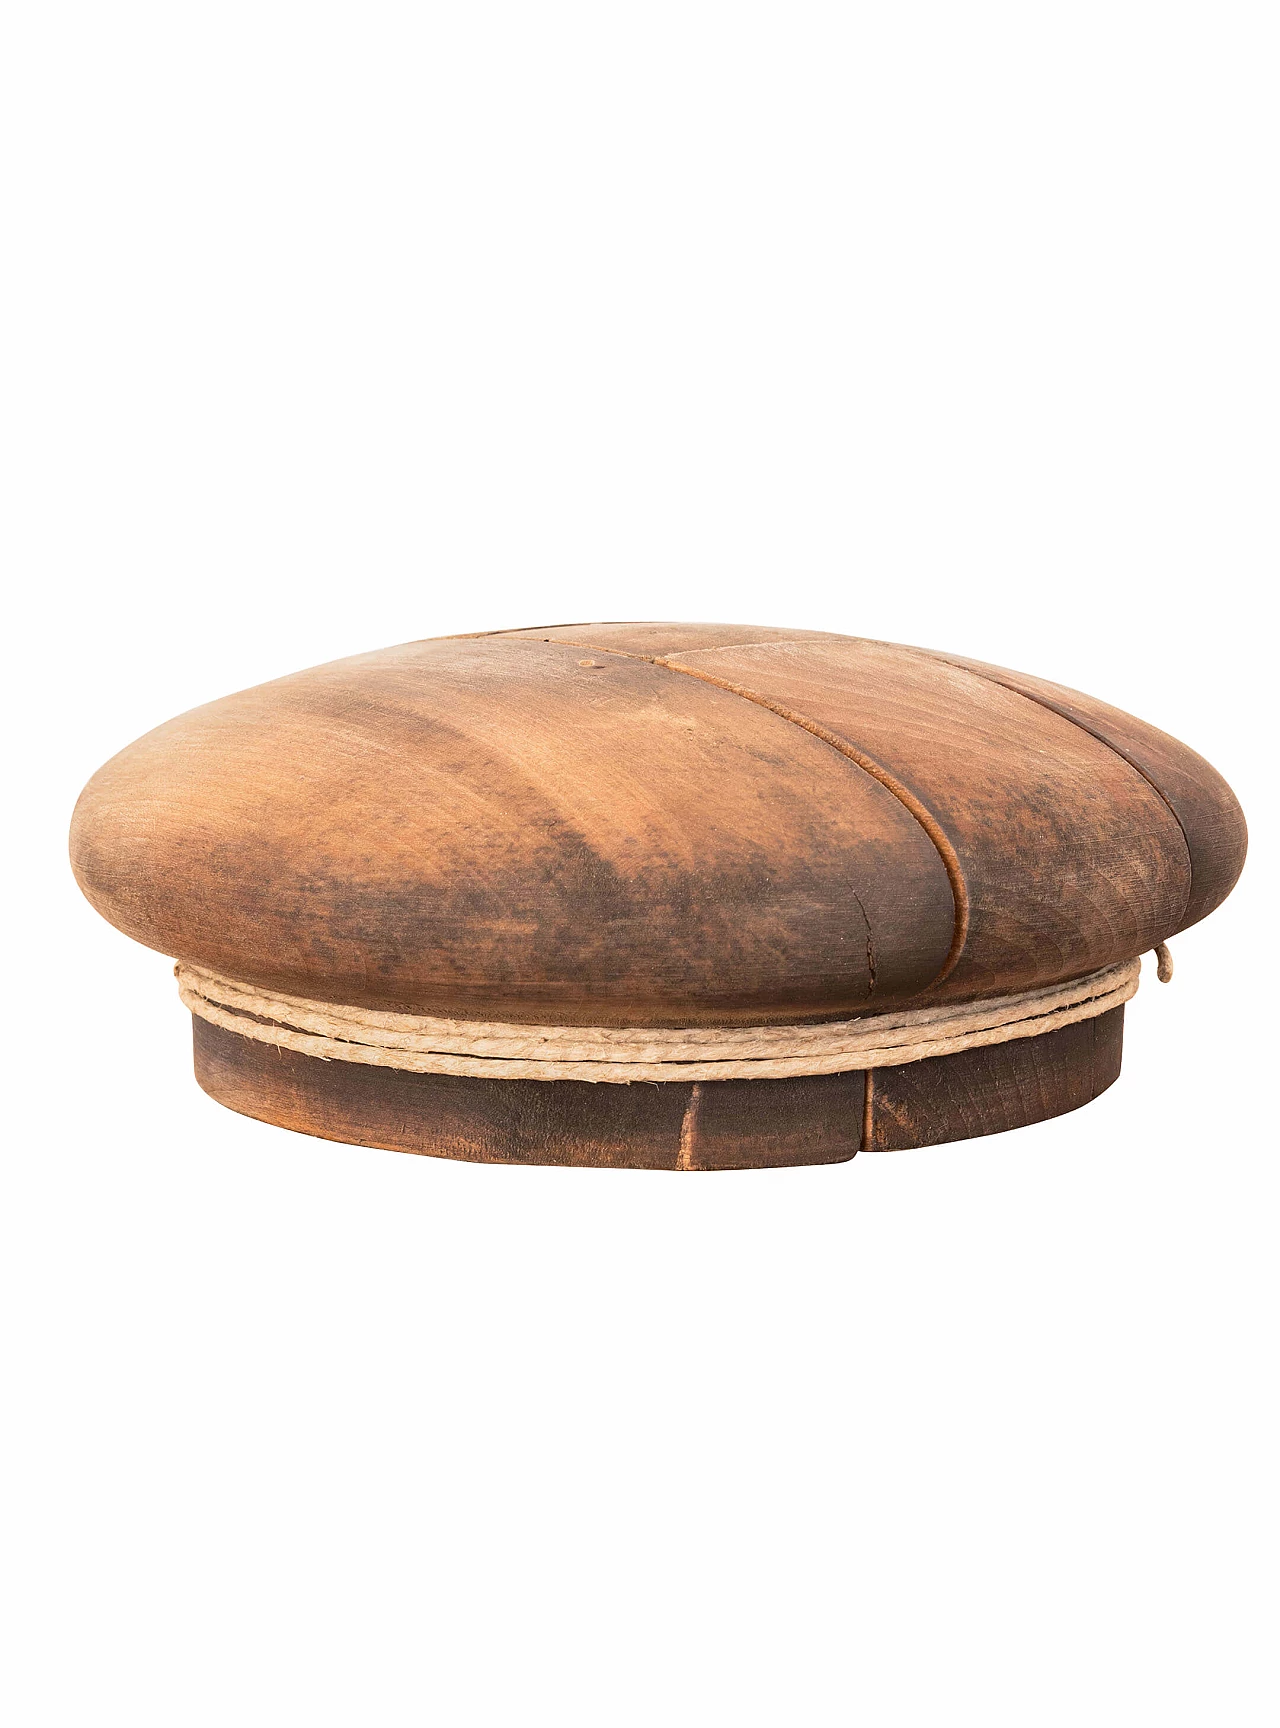 Antico stampo per cappelli in legno, inizio 900 1089102